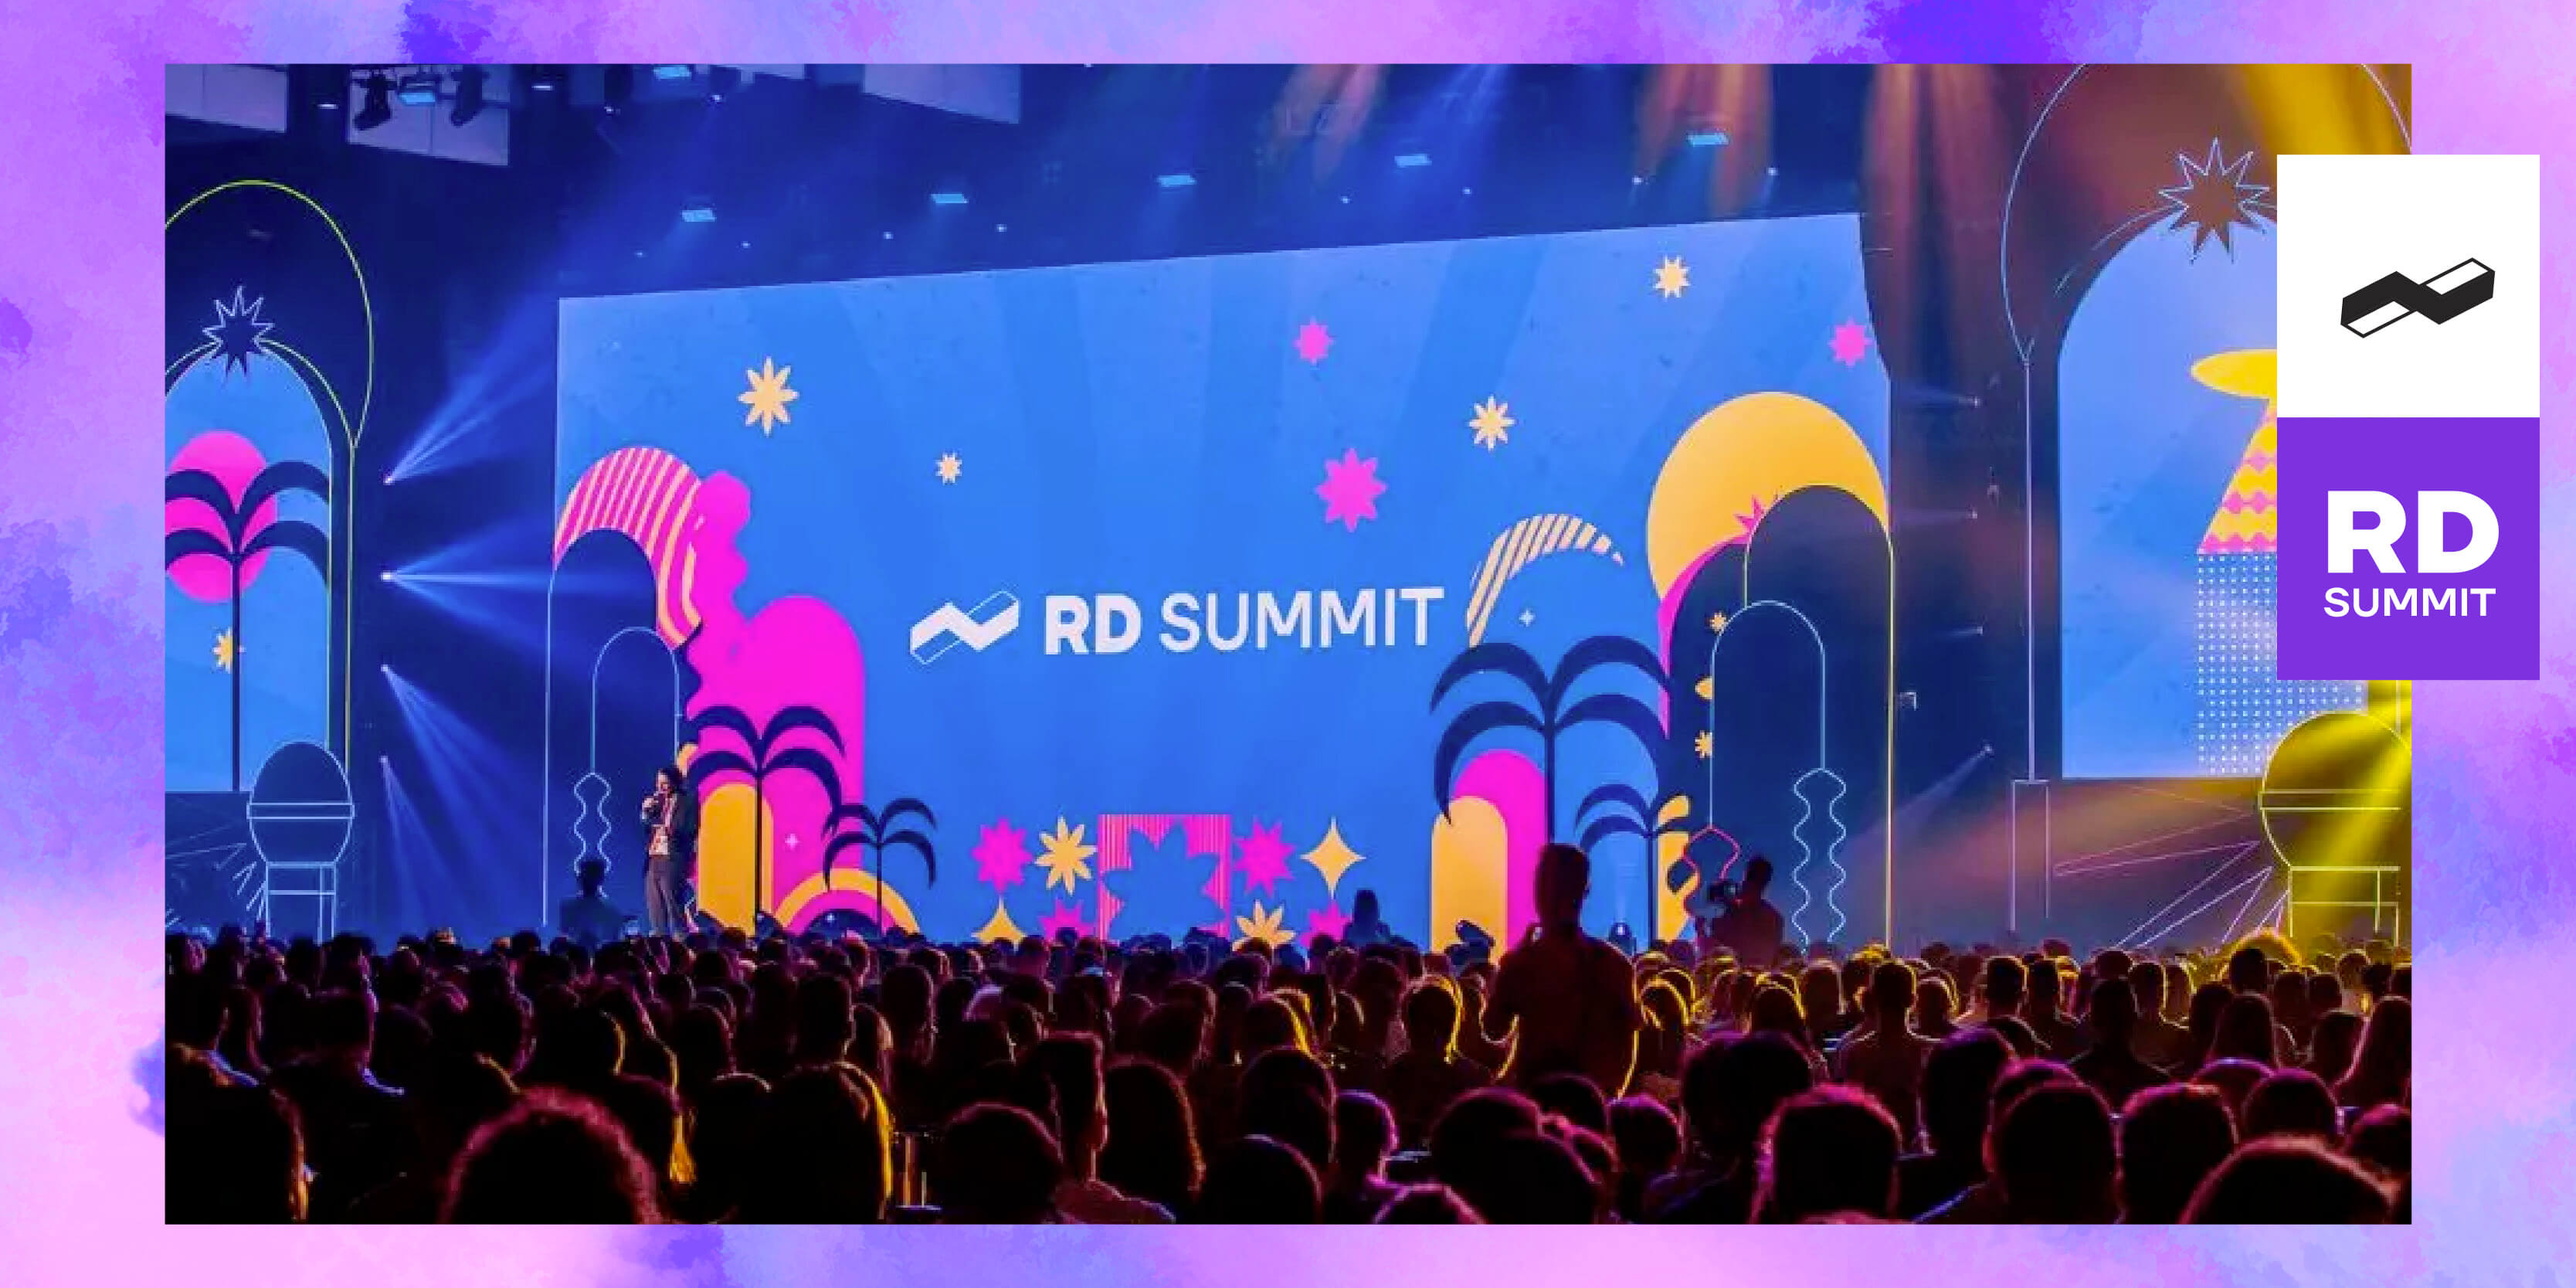 Em menos de um mês acontece o RD Summit 2023, em São Paulo